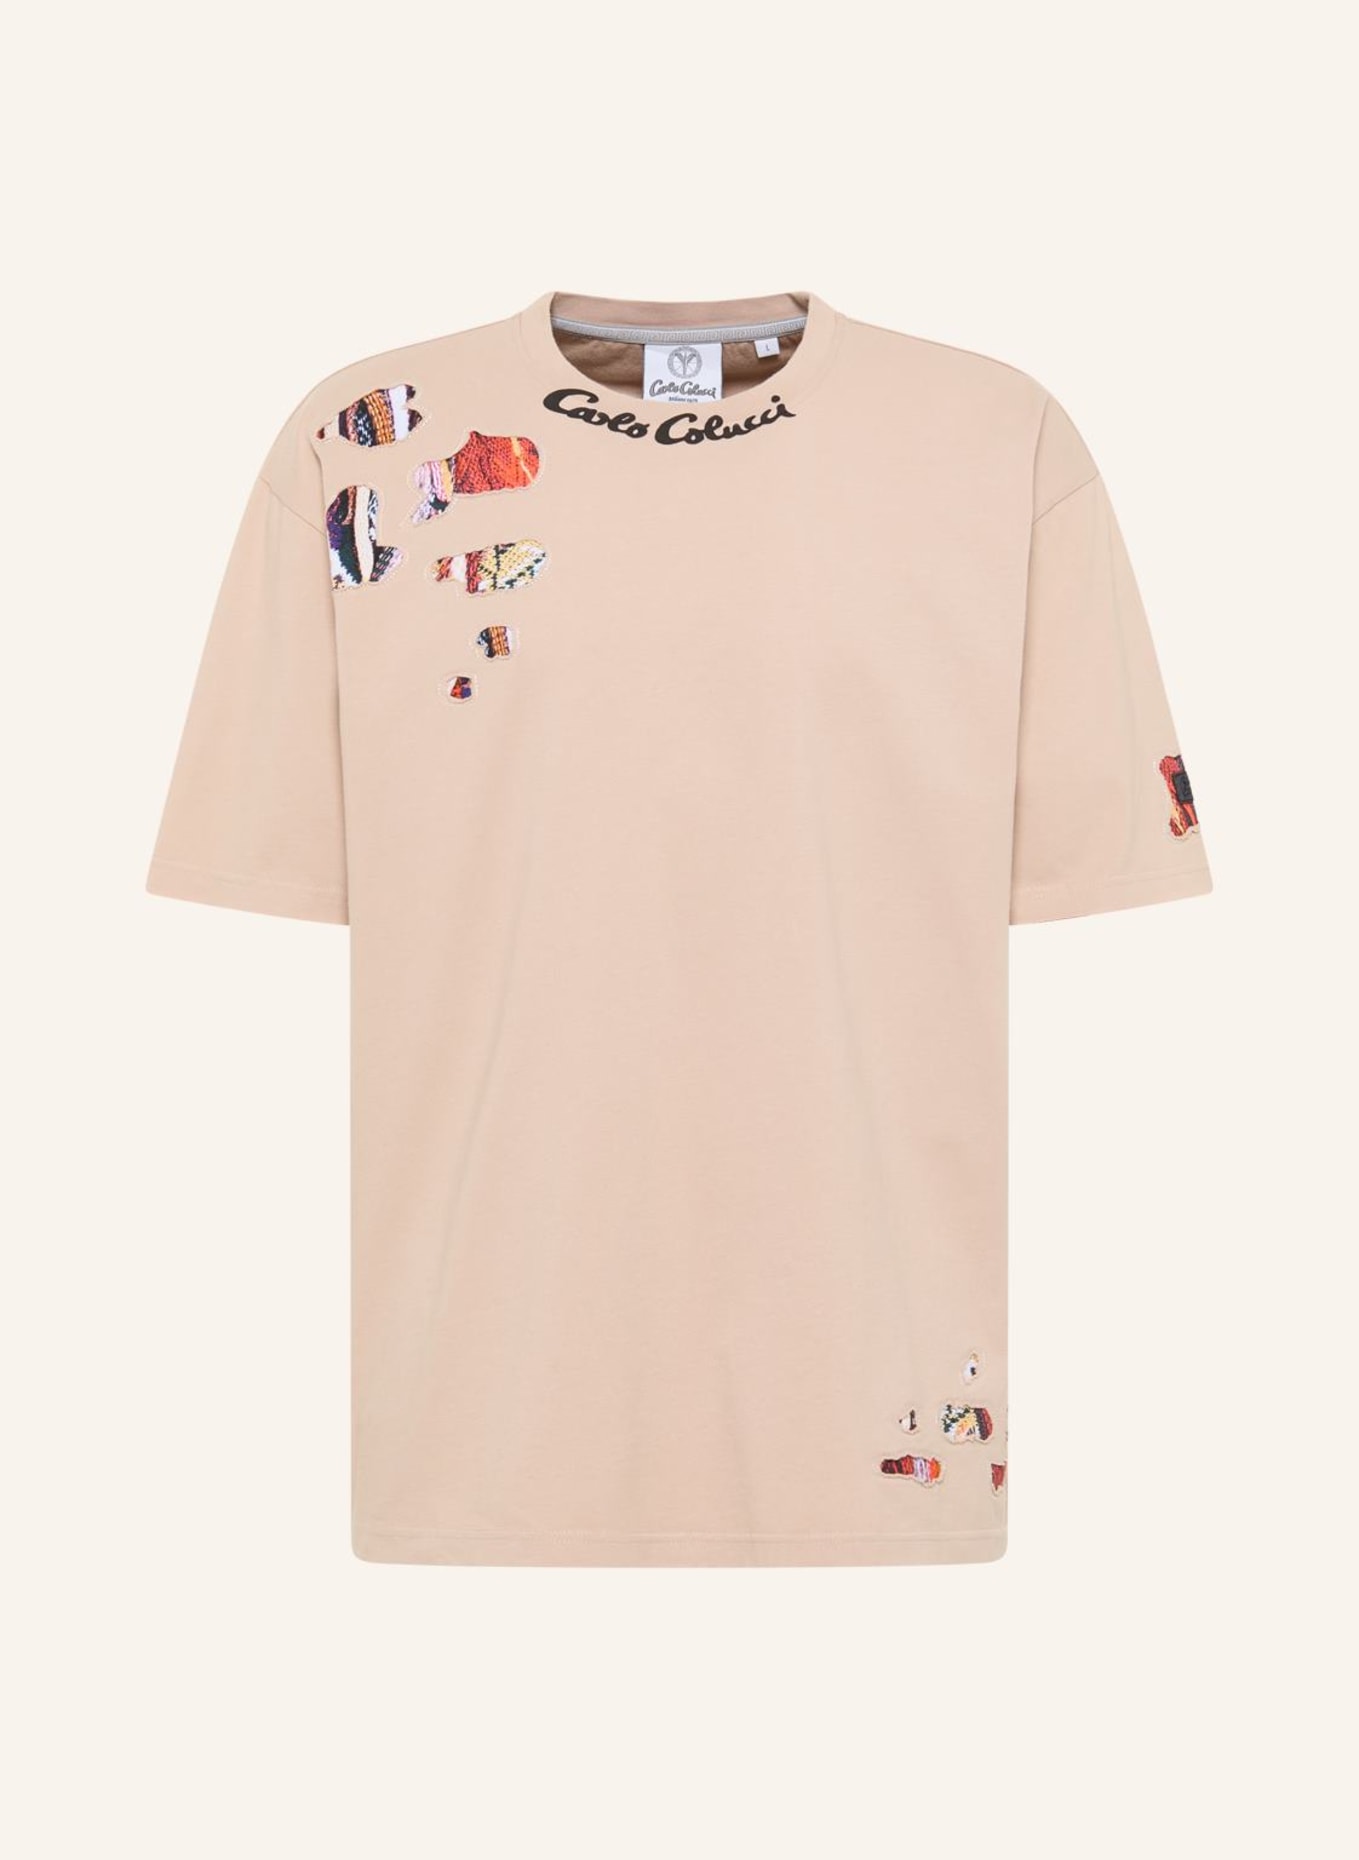 CARLO COLUCCI Oversize T-Shirt DELLATORRE, Farbe: BEIGE (Bild 1)